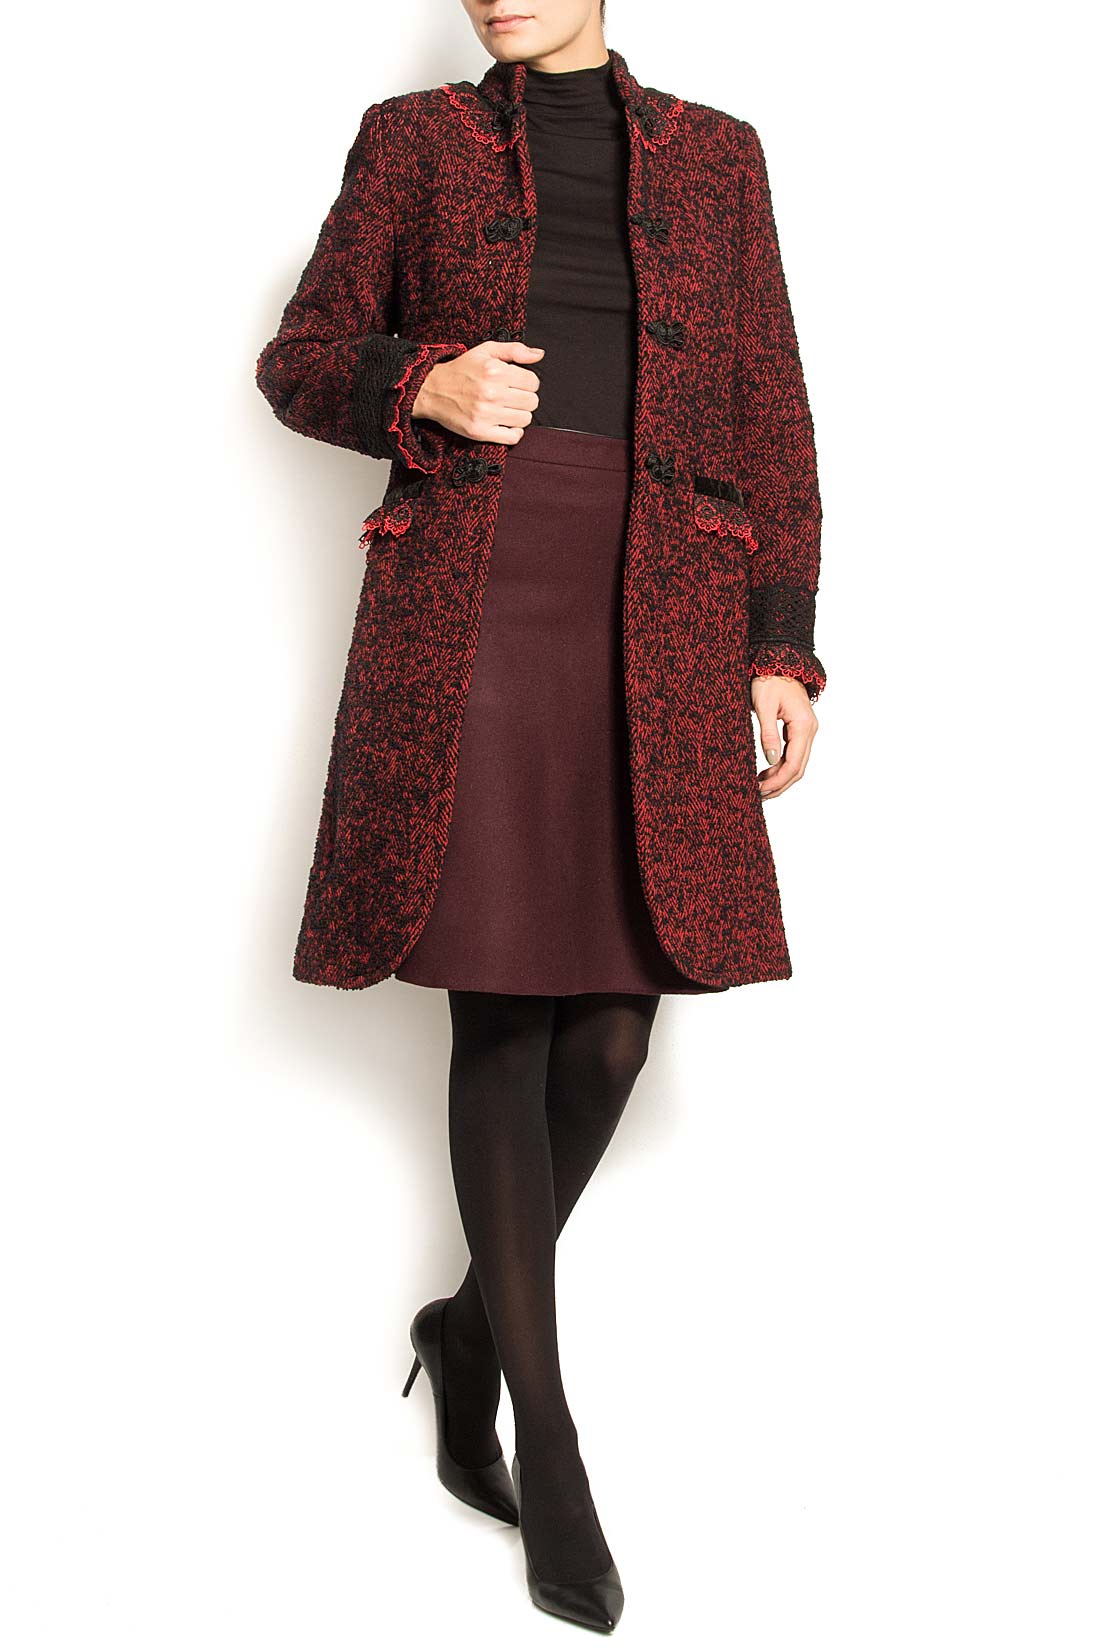 Palton din lana cu aplicatii din dantela Carmen Ormenisan imagine 1